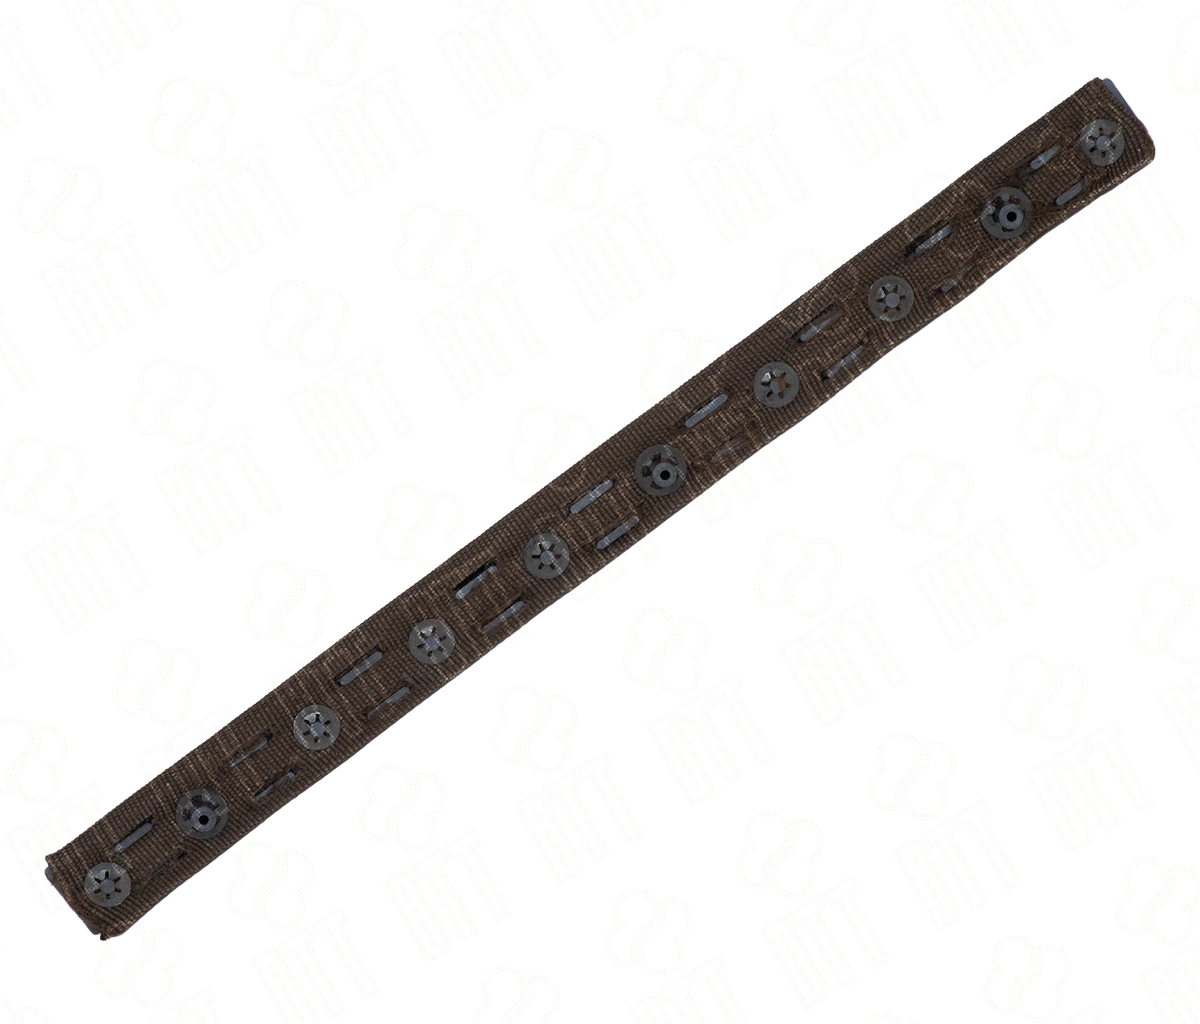 Прижимная планка фьюзера (в сборе) Hi-Black для Kyocera P2235/ 2040 (FK-1150)